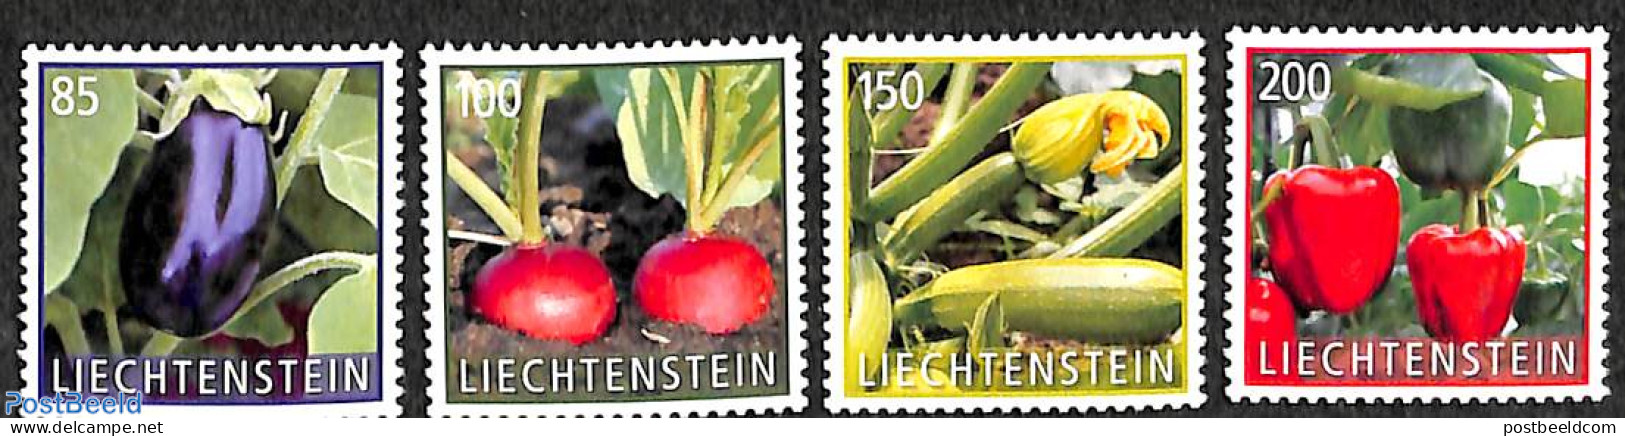 Liechtenstein 2018 Vegetables 4v S-a, Mint NH, Health - Food & Drink - Ungebraucht